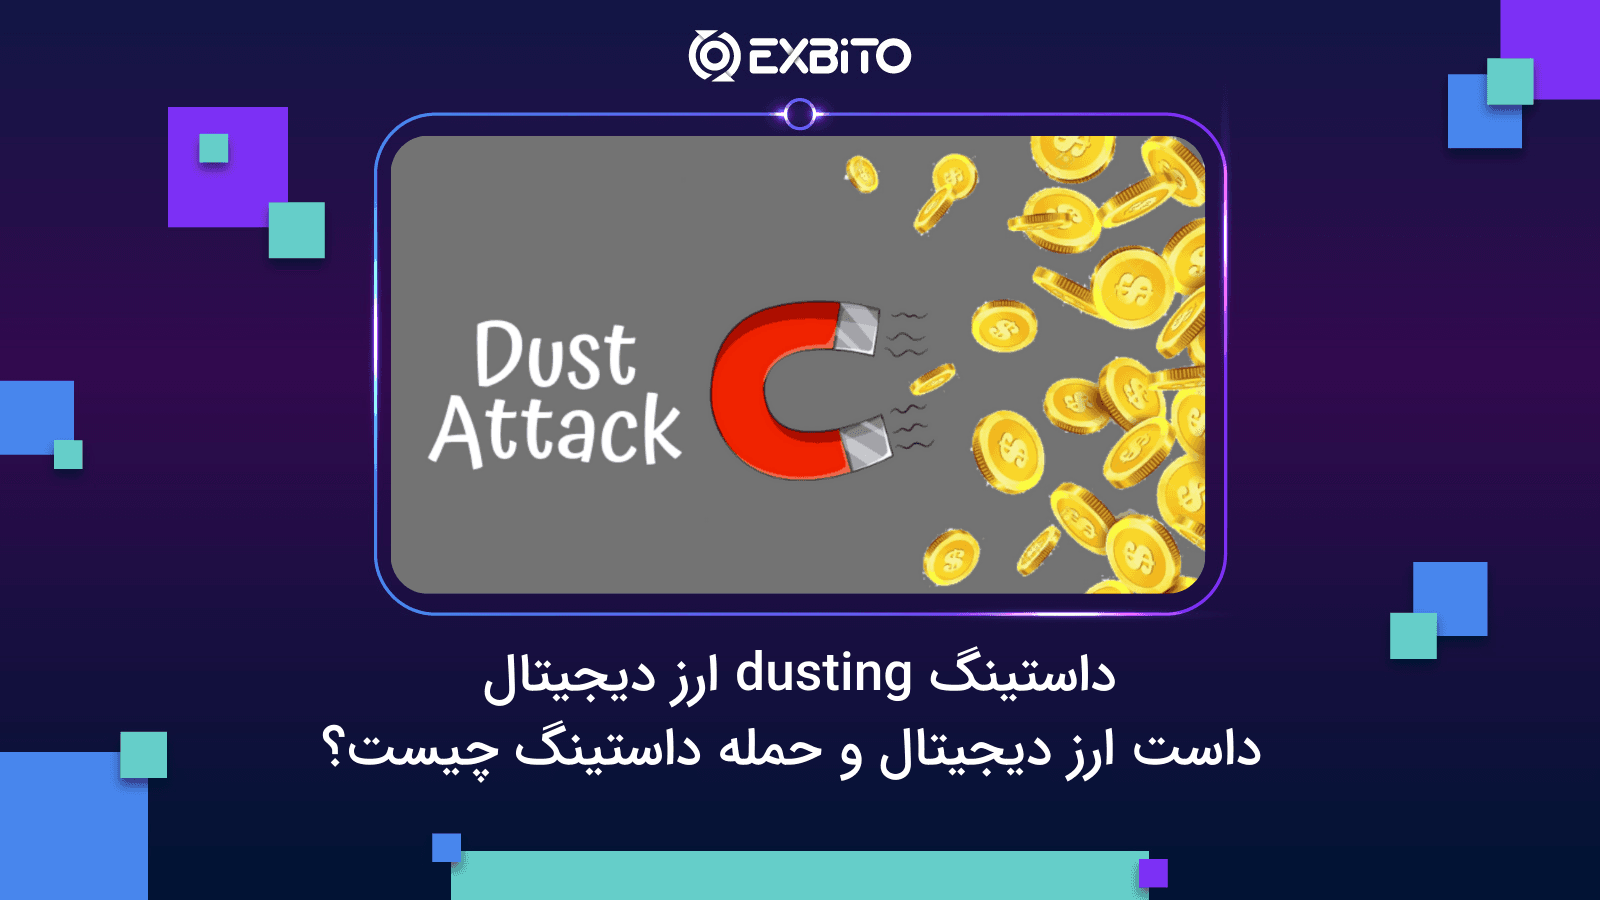 داستینگ dusting ارز دیجیتال| داست ارز دیجیتال و حمله داستینگ چیست؟